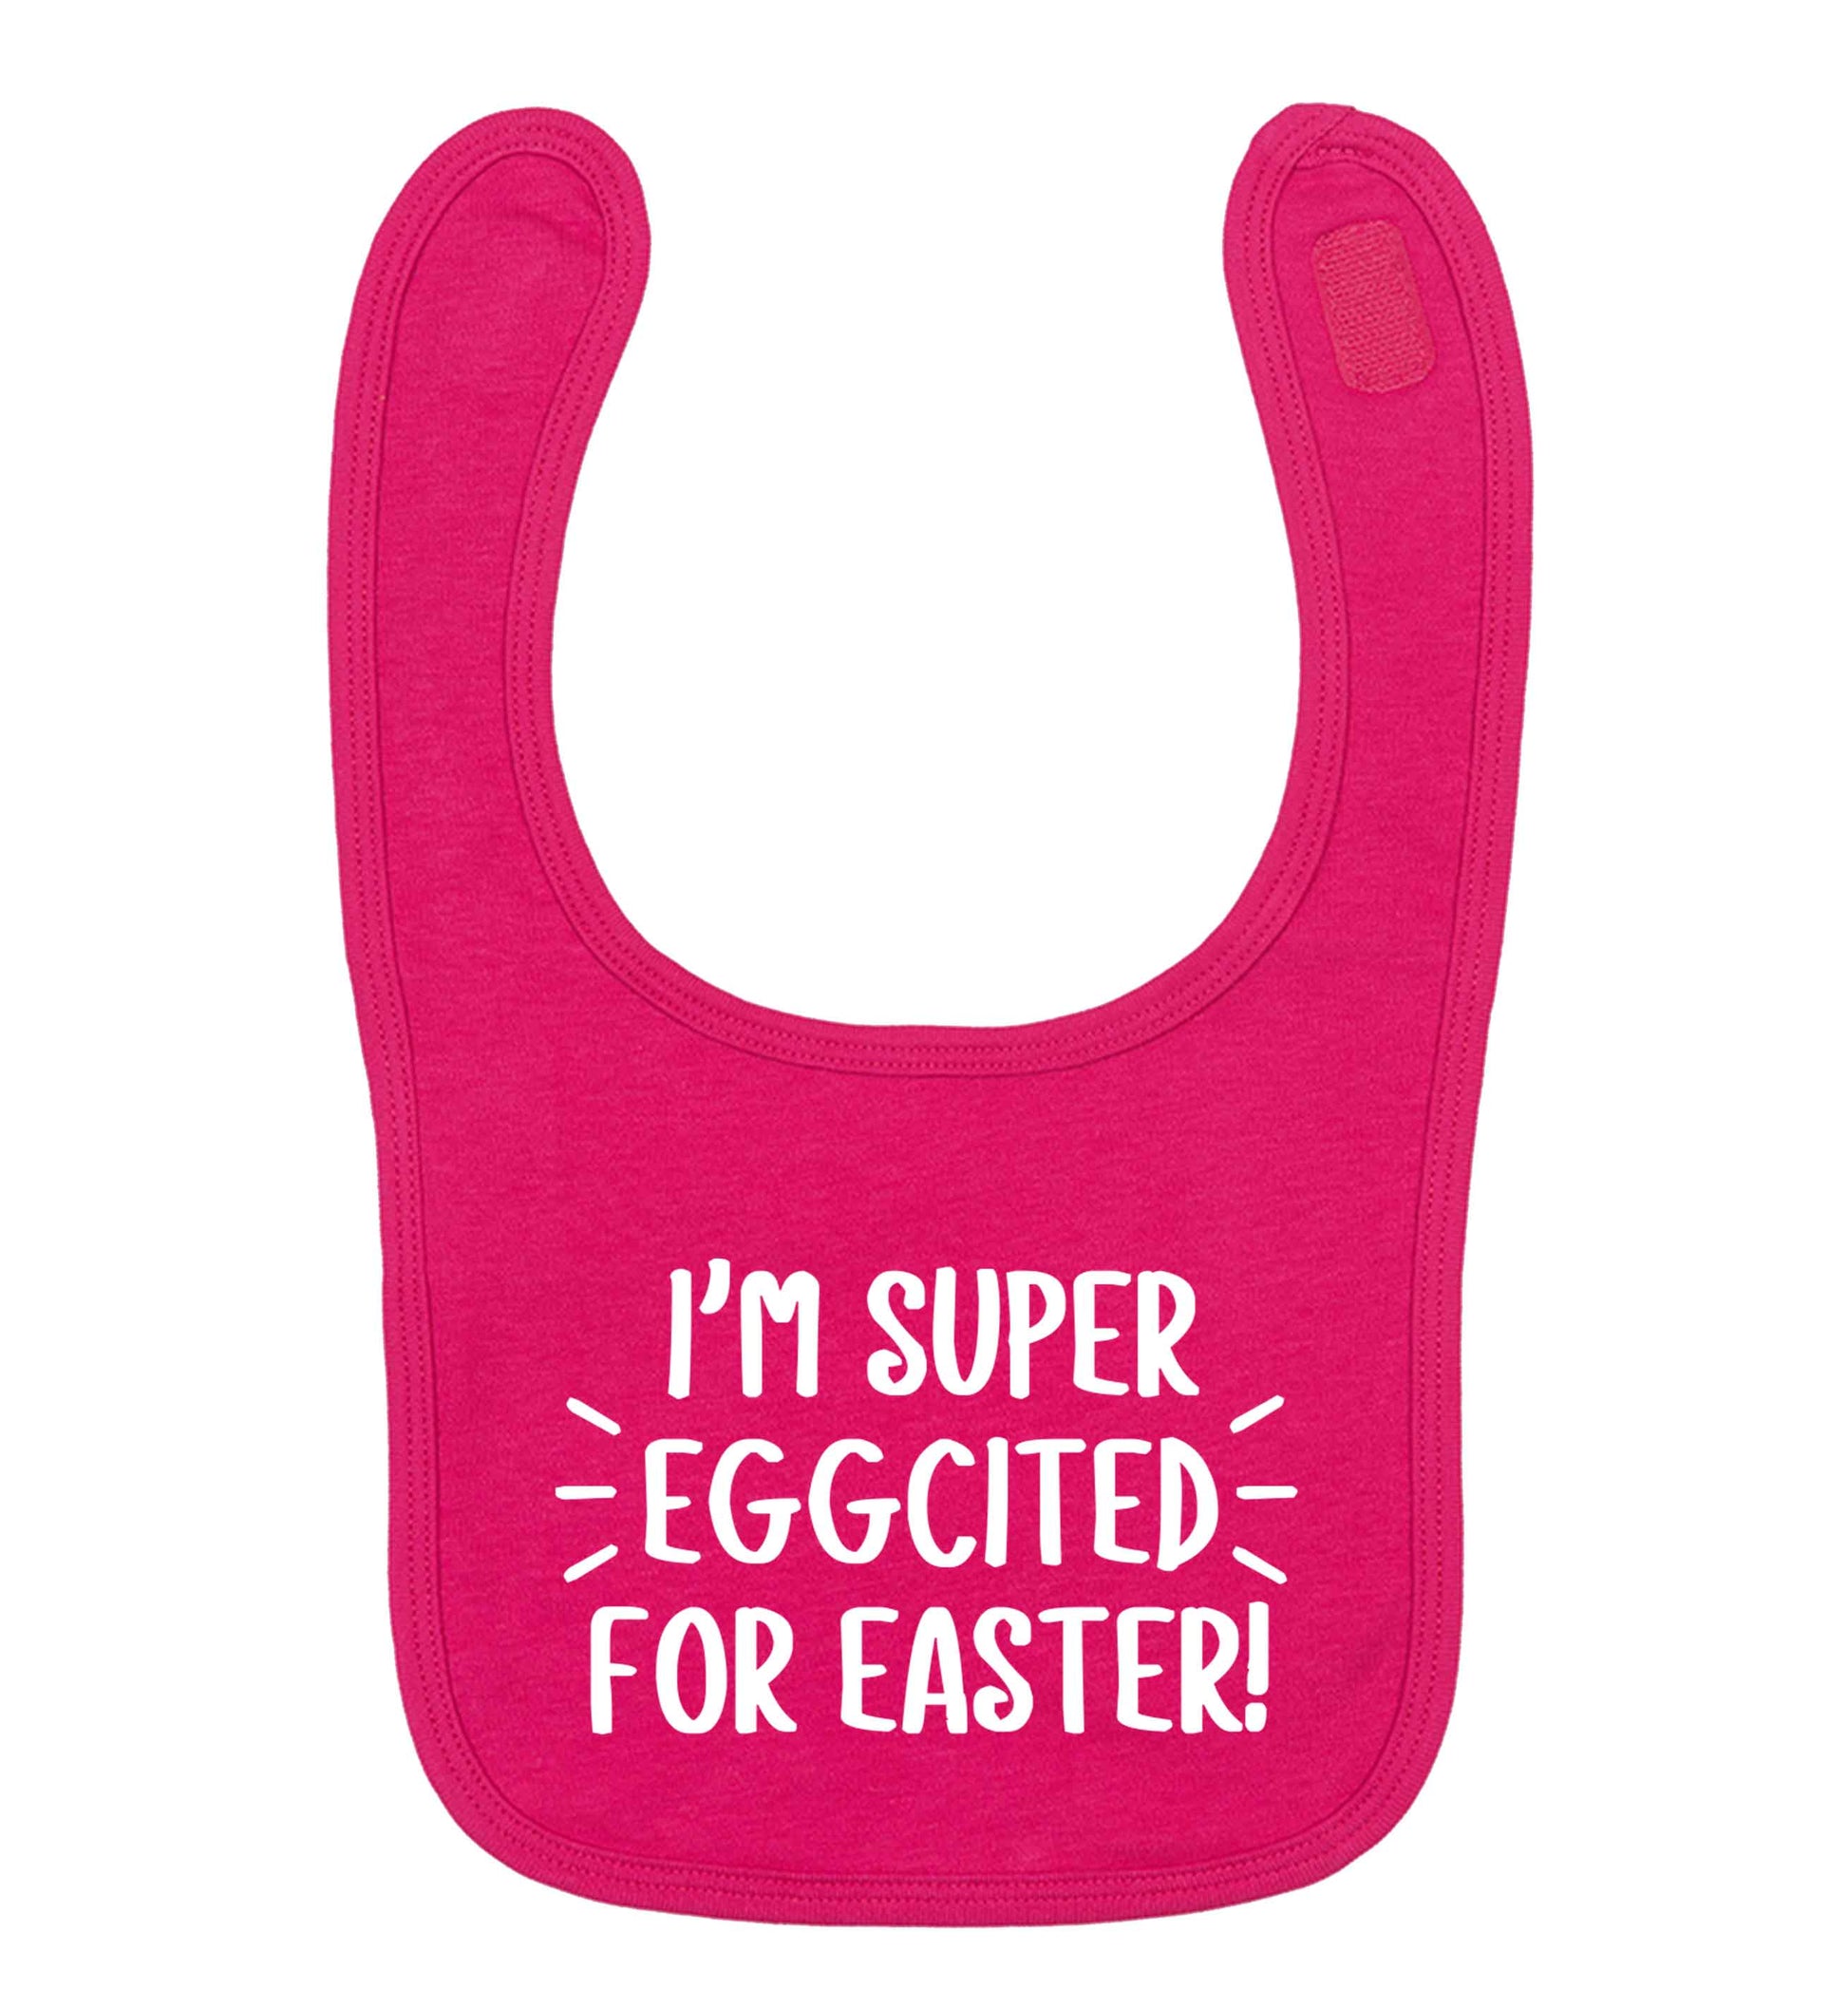 I'm super eggcited for Easter dark pink baby bib